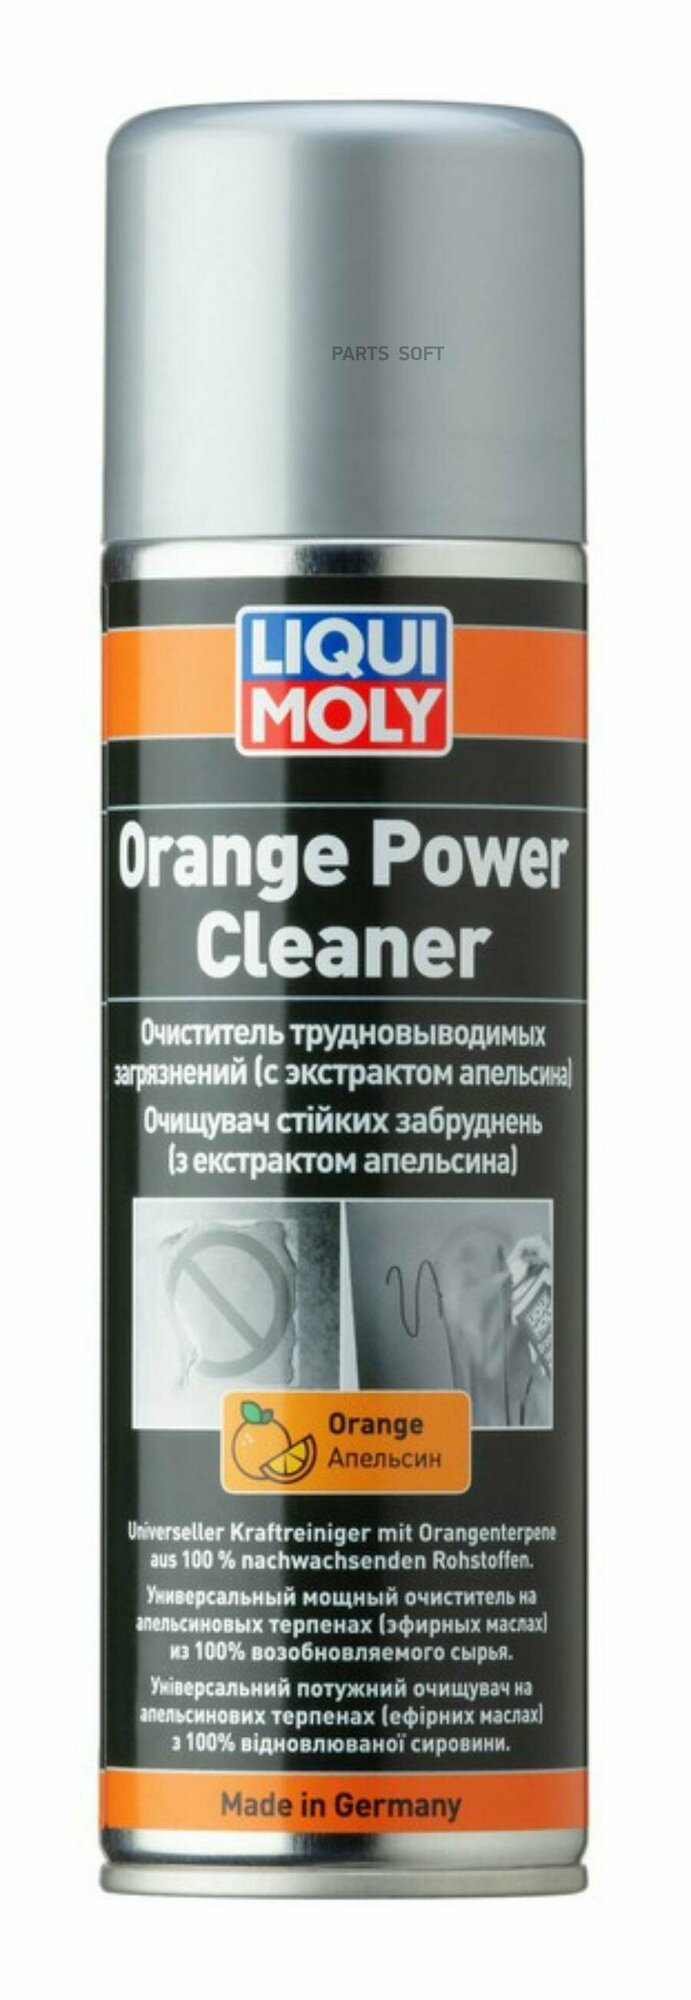 Очист трудновывод загряз экстр апельсина LIQUIMOLY 39044